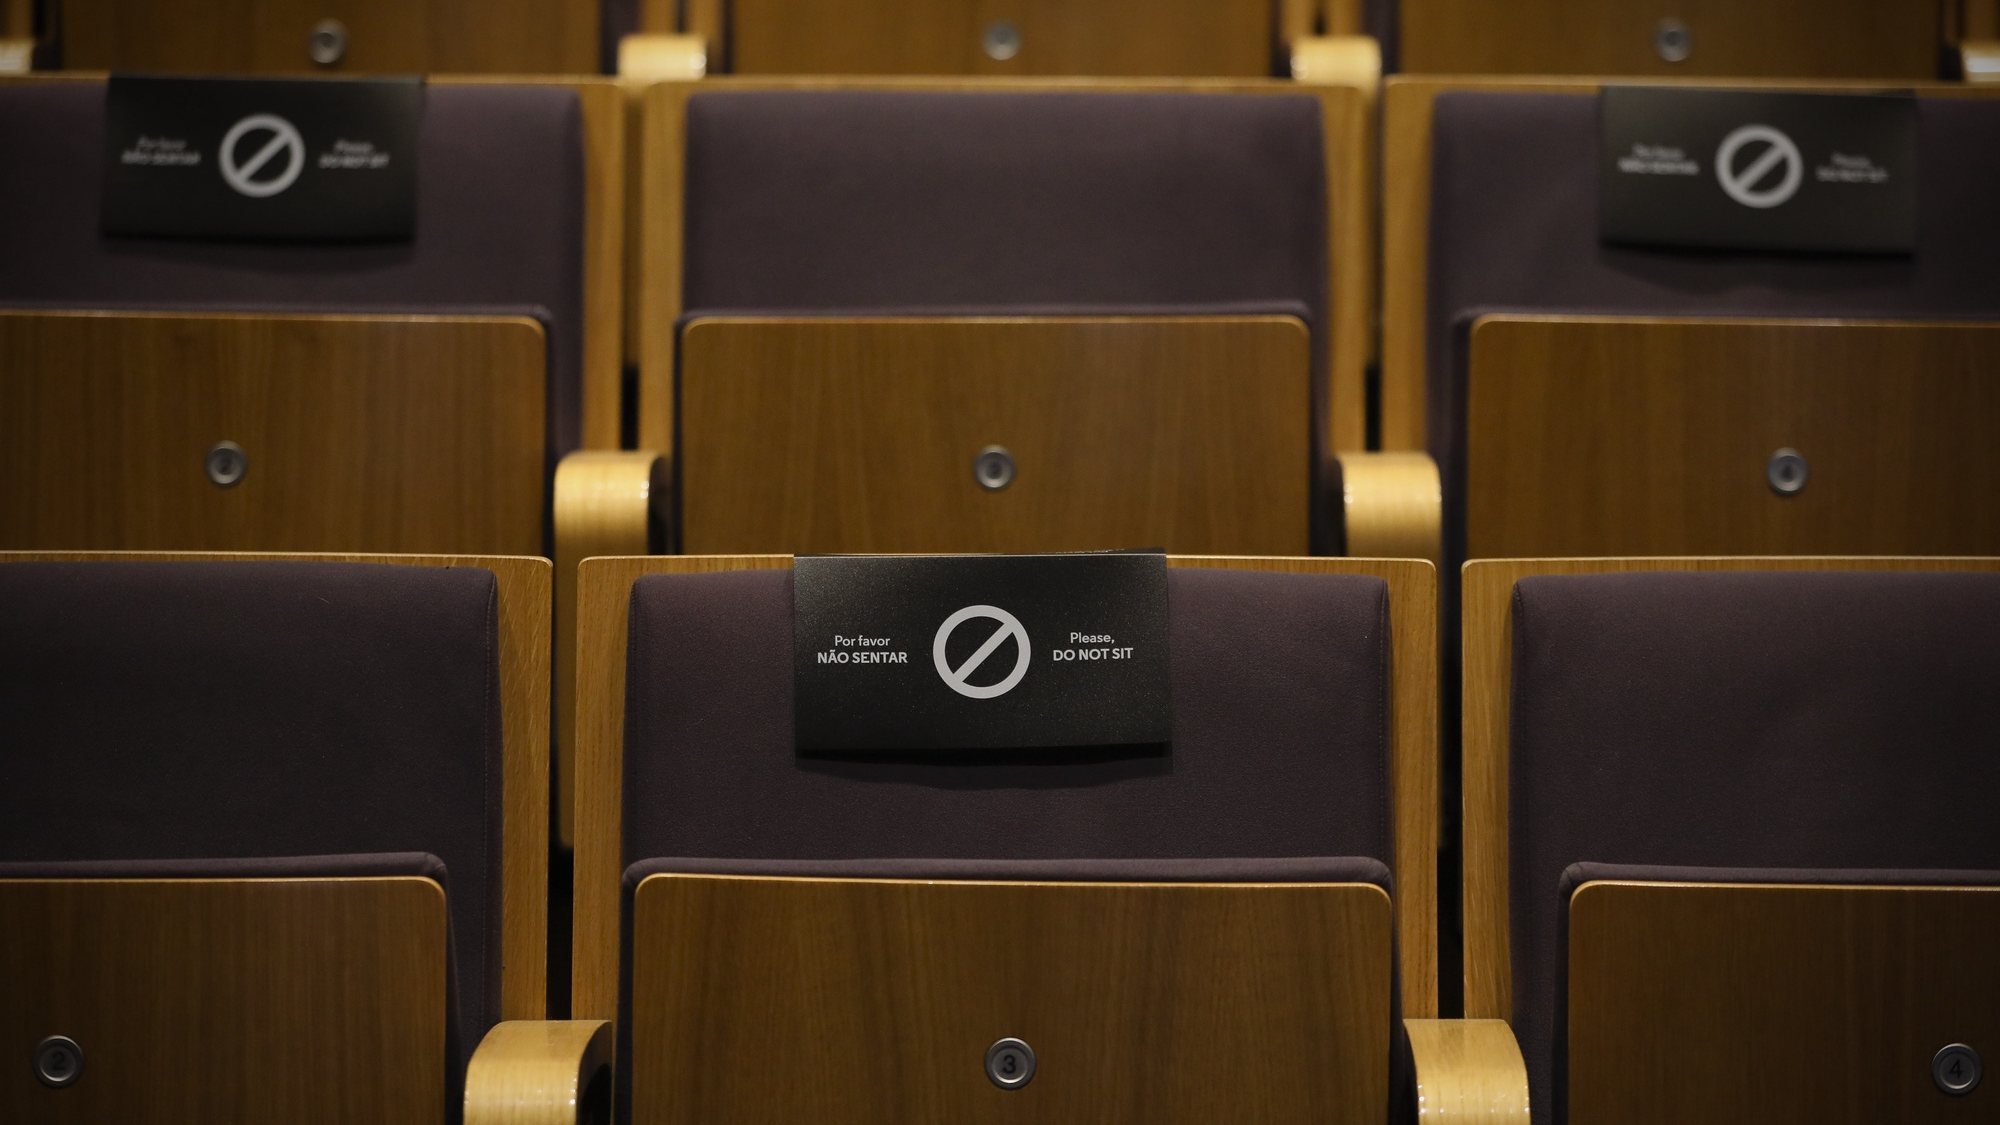 Uma placa numa cadeira alerta para o distanciamento social numa sala de espetáculos  do Teatro Municipal Rivoli, Porto, 28 de julho de 2020. JOSÉ COELHO/LUSA